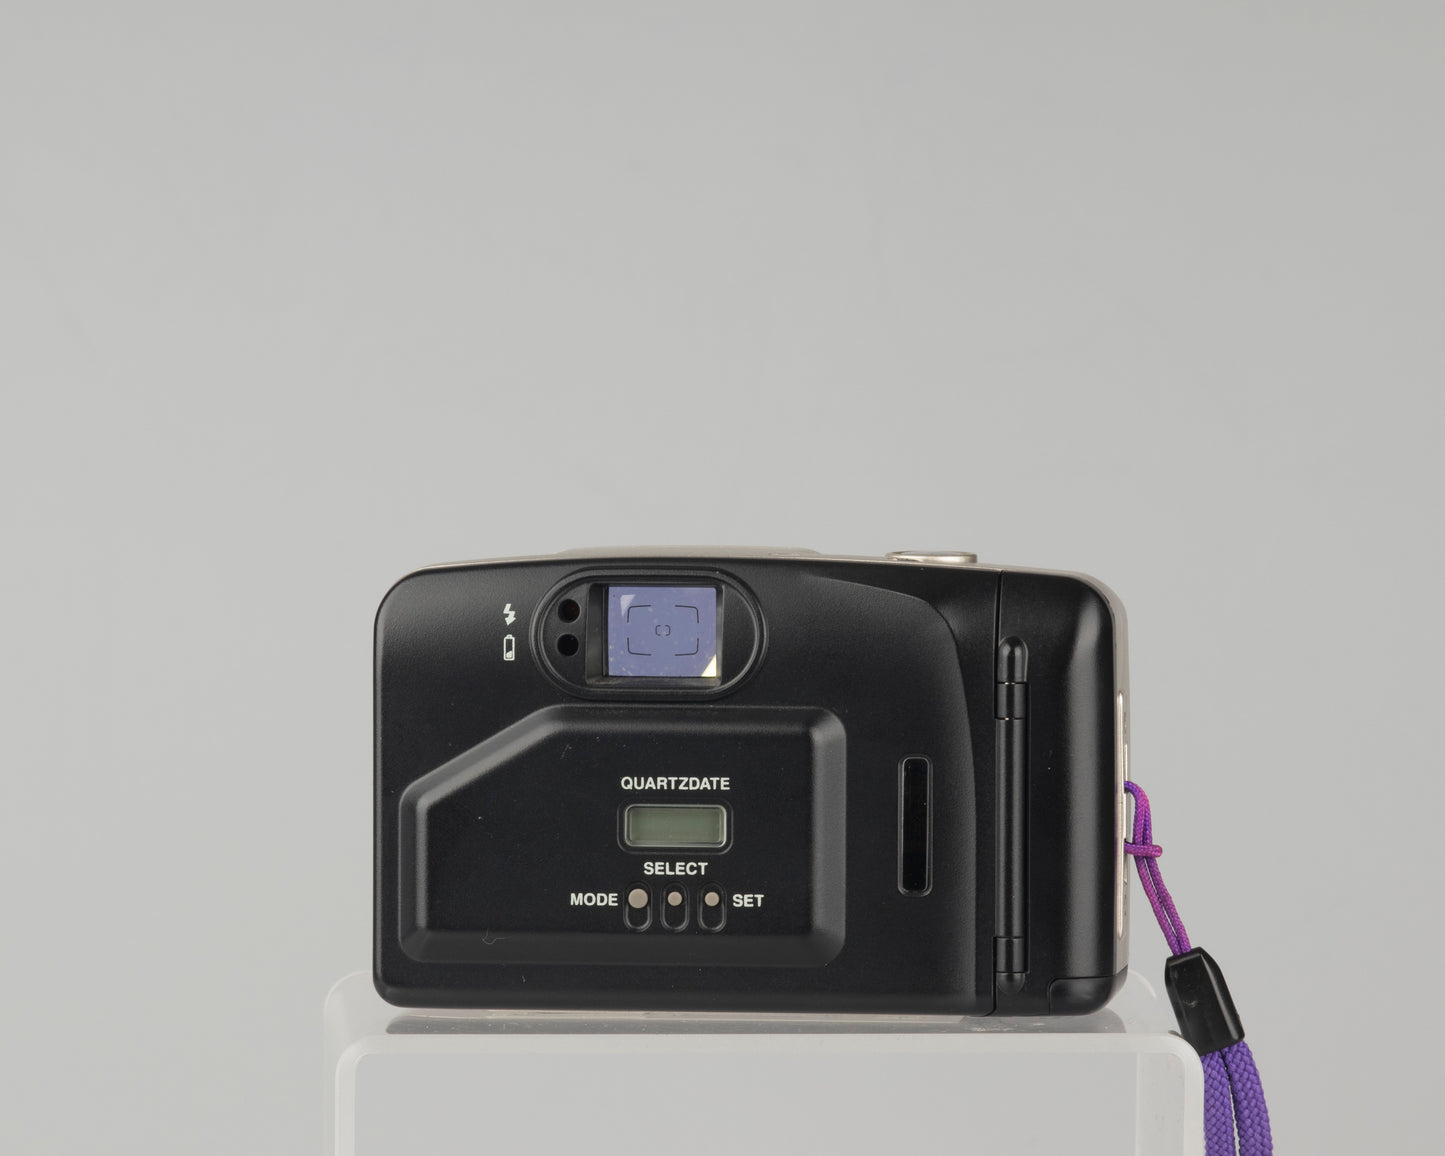 Olympus Trip XB AF-44 35mm camera